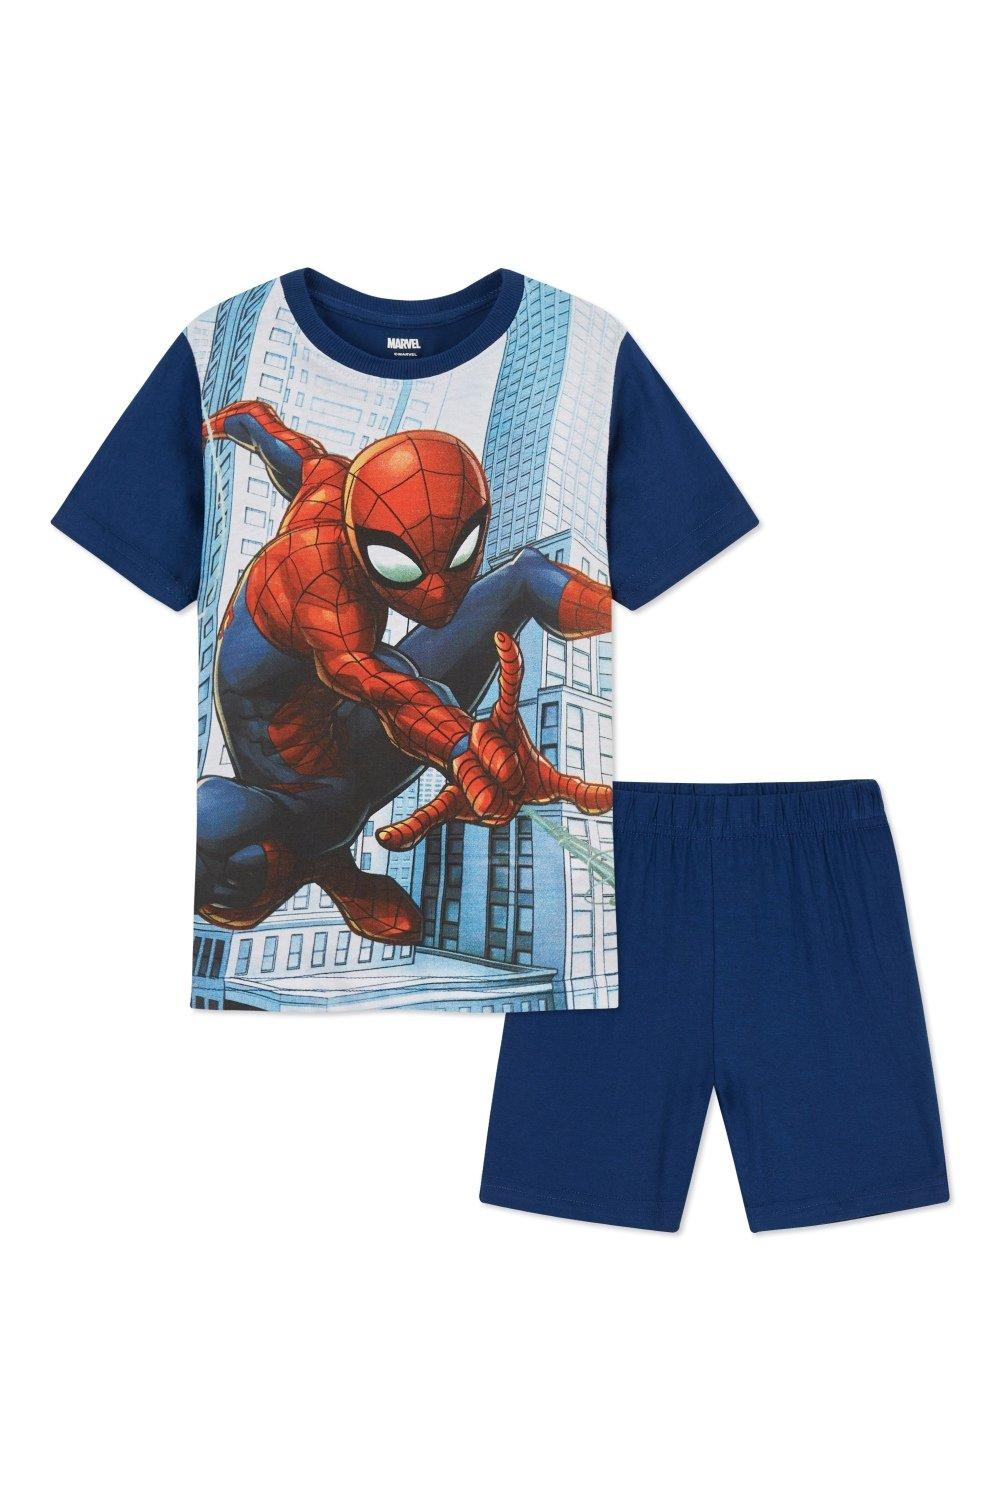 Короткий пижамный комплект «Человек-паук» Marvel, мультиколор пазл человек паук 200 элементов marvel pr33045